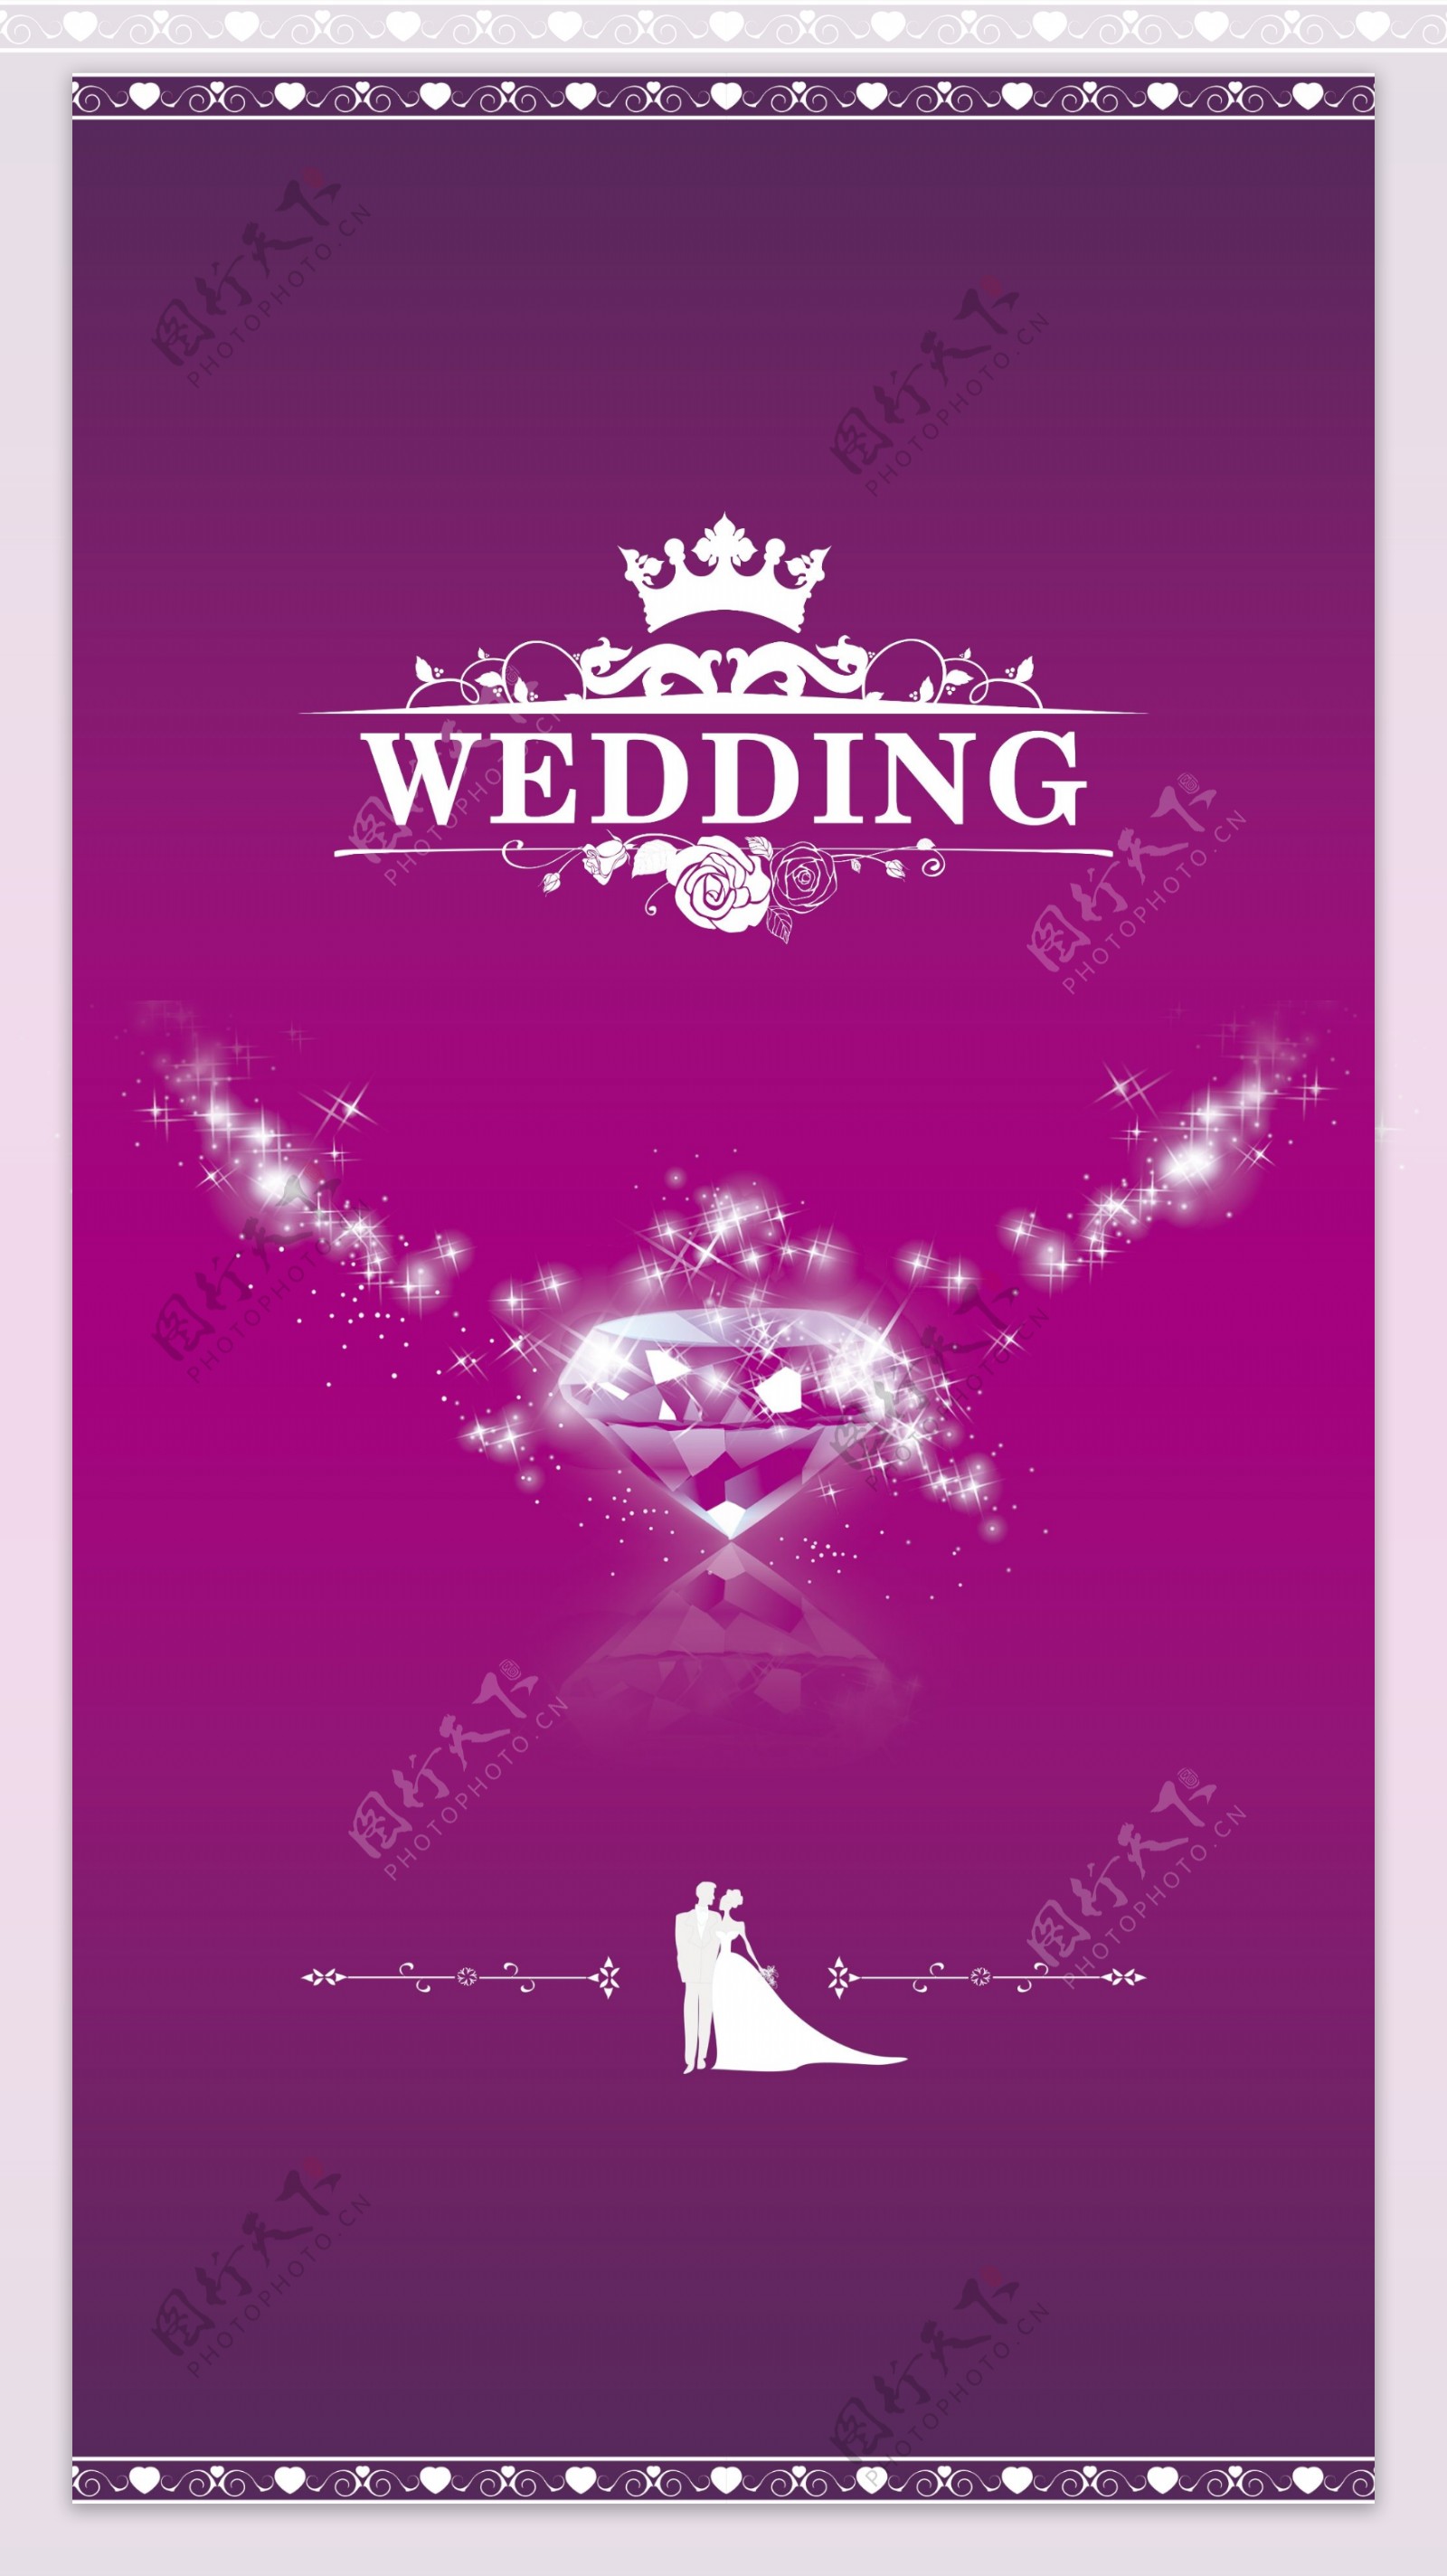 皇冠钻石紫色背景psd素材